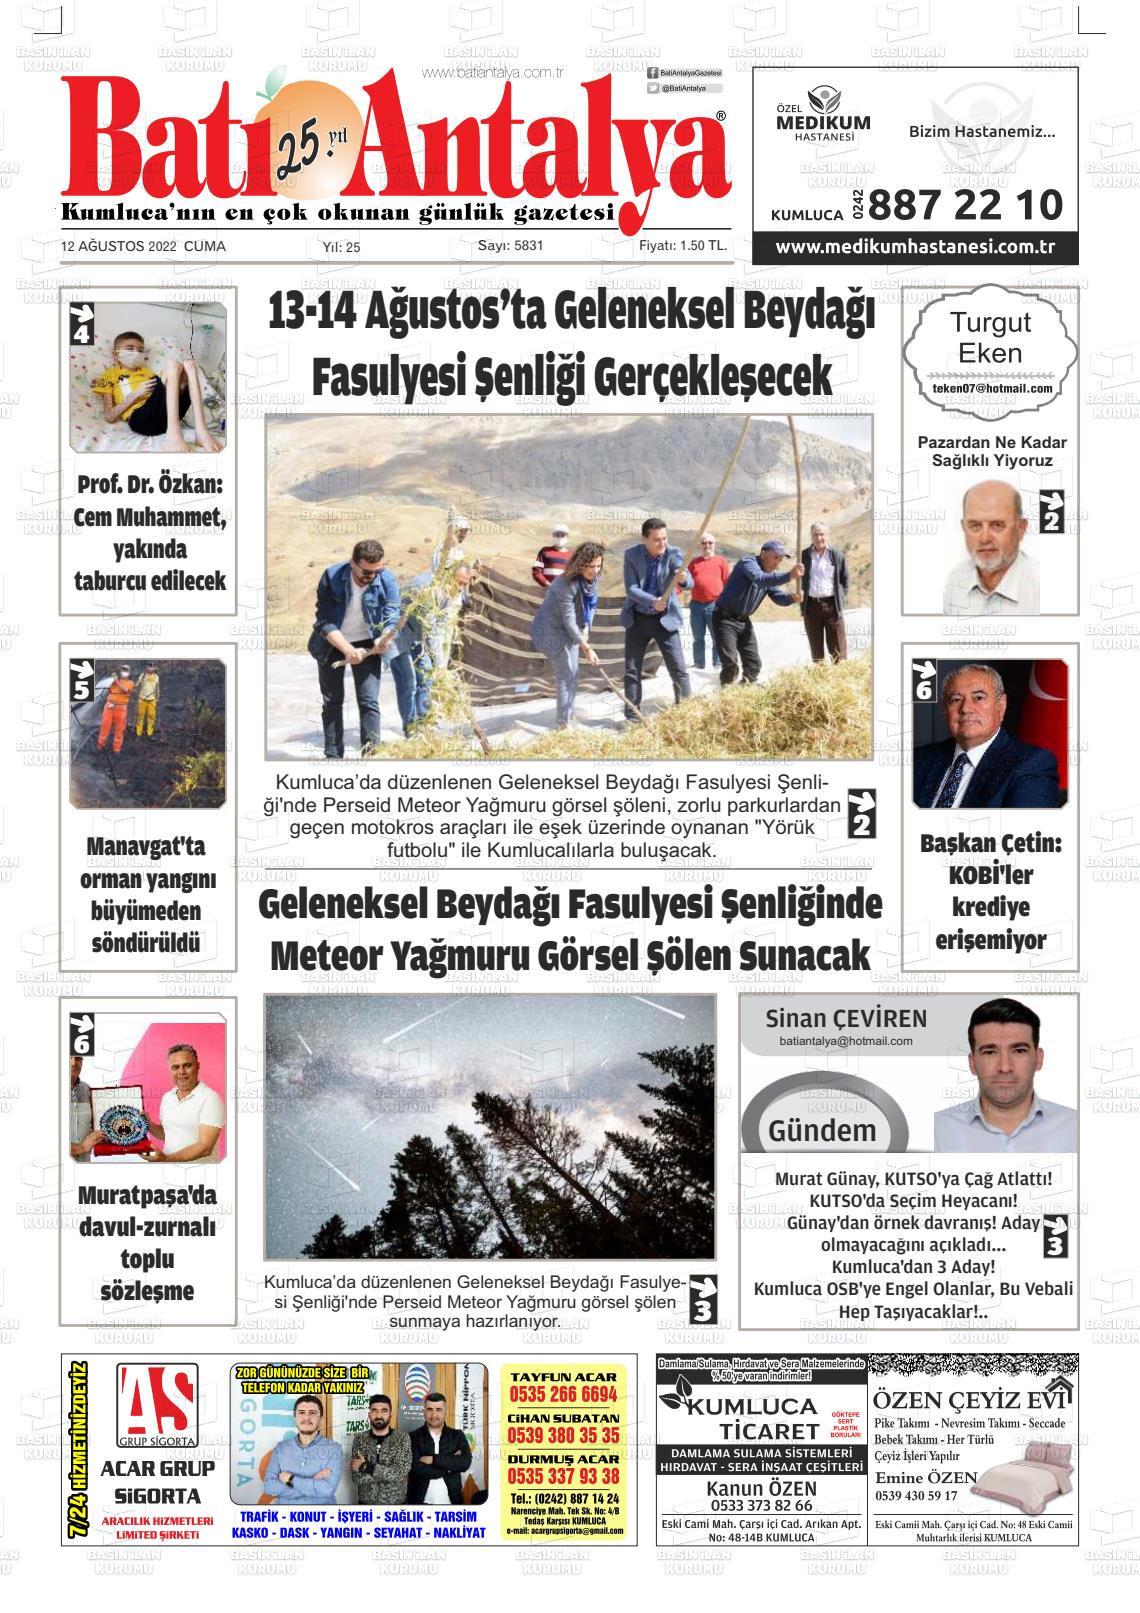 12 Ağustos 2022 Batı Antalya Gazete Manşeti